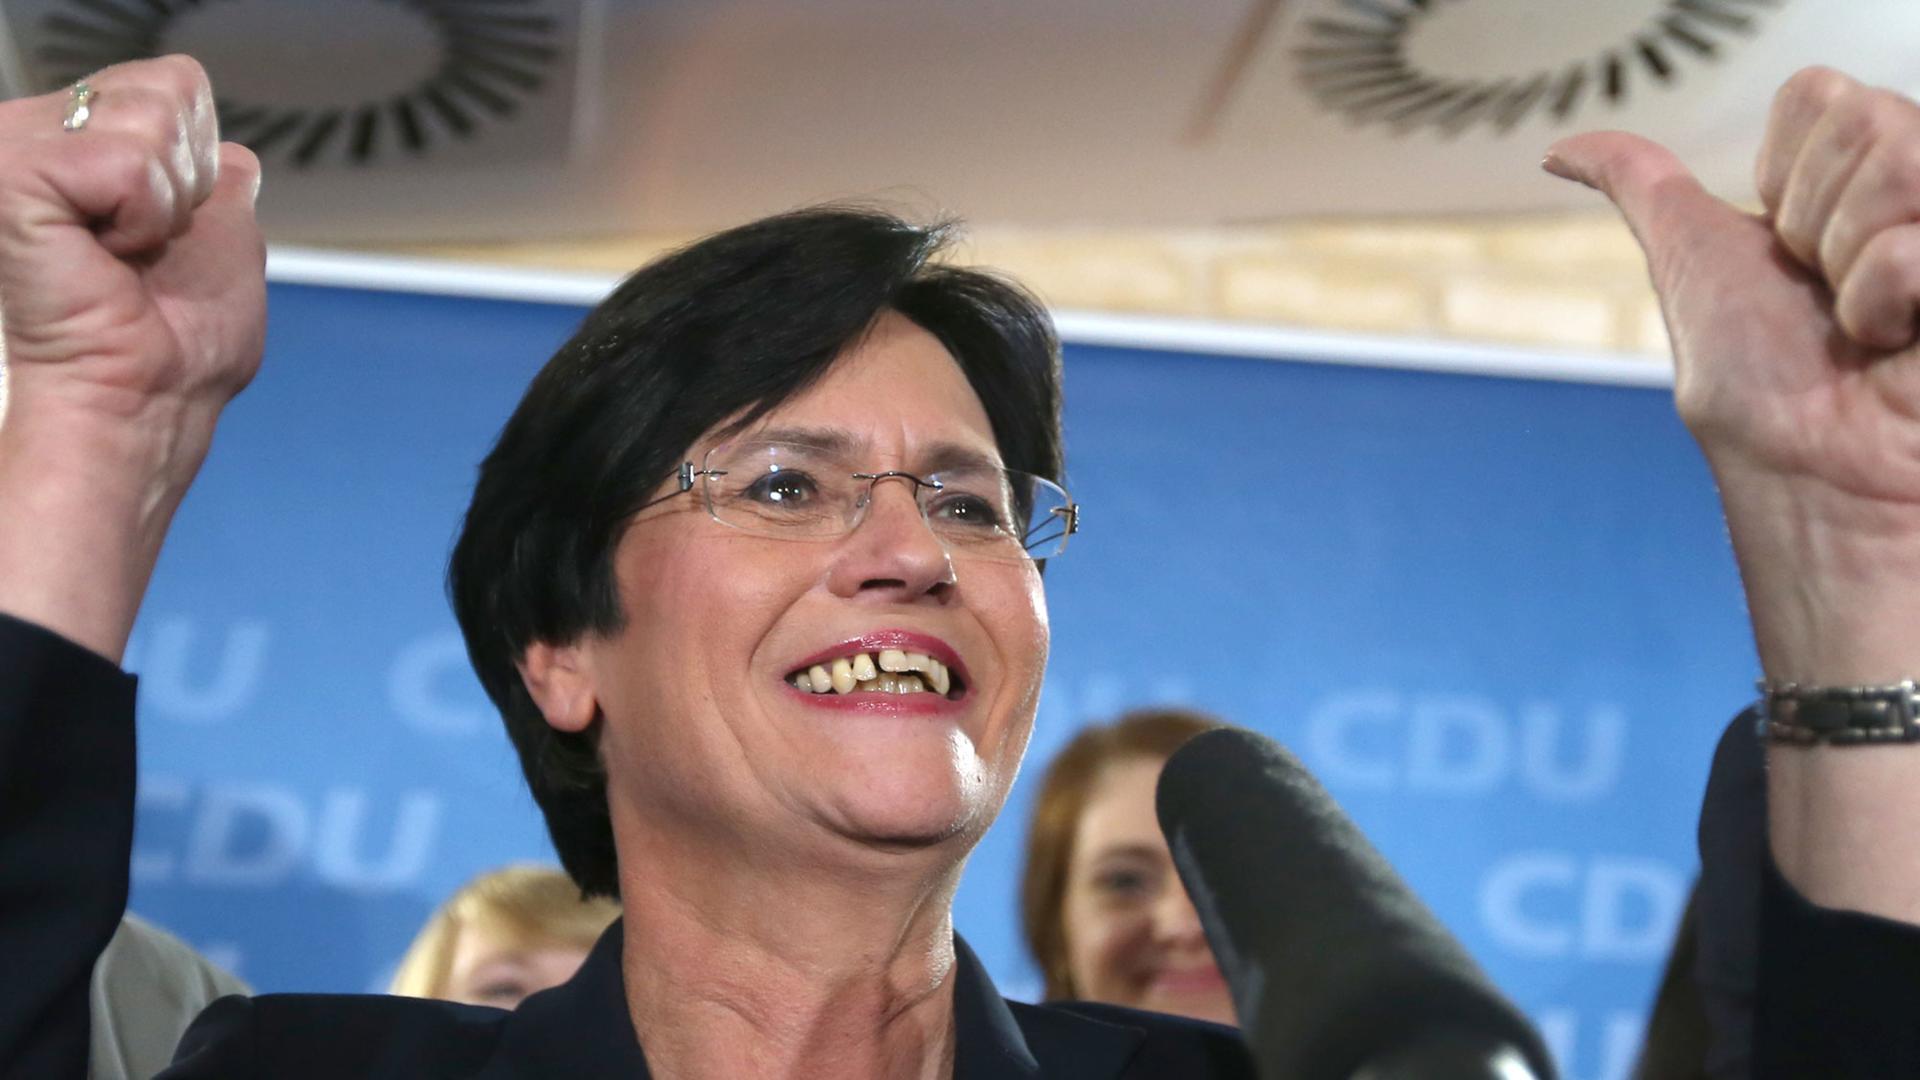 Die Regierungs-Chefin von Thüringen jubelt, weil die CDU die meisten Stimmen bekommen hat